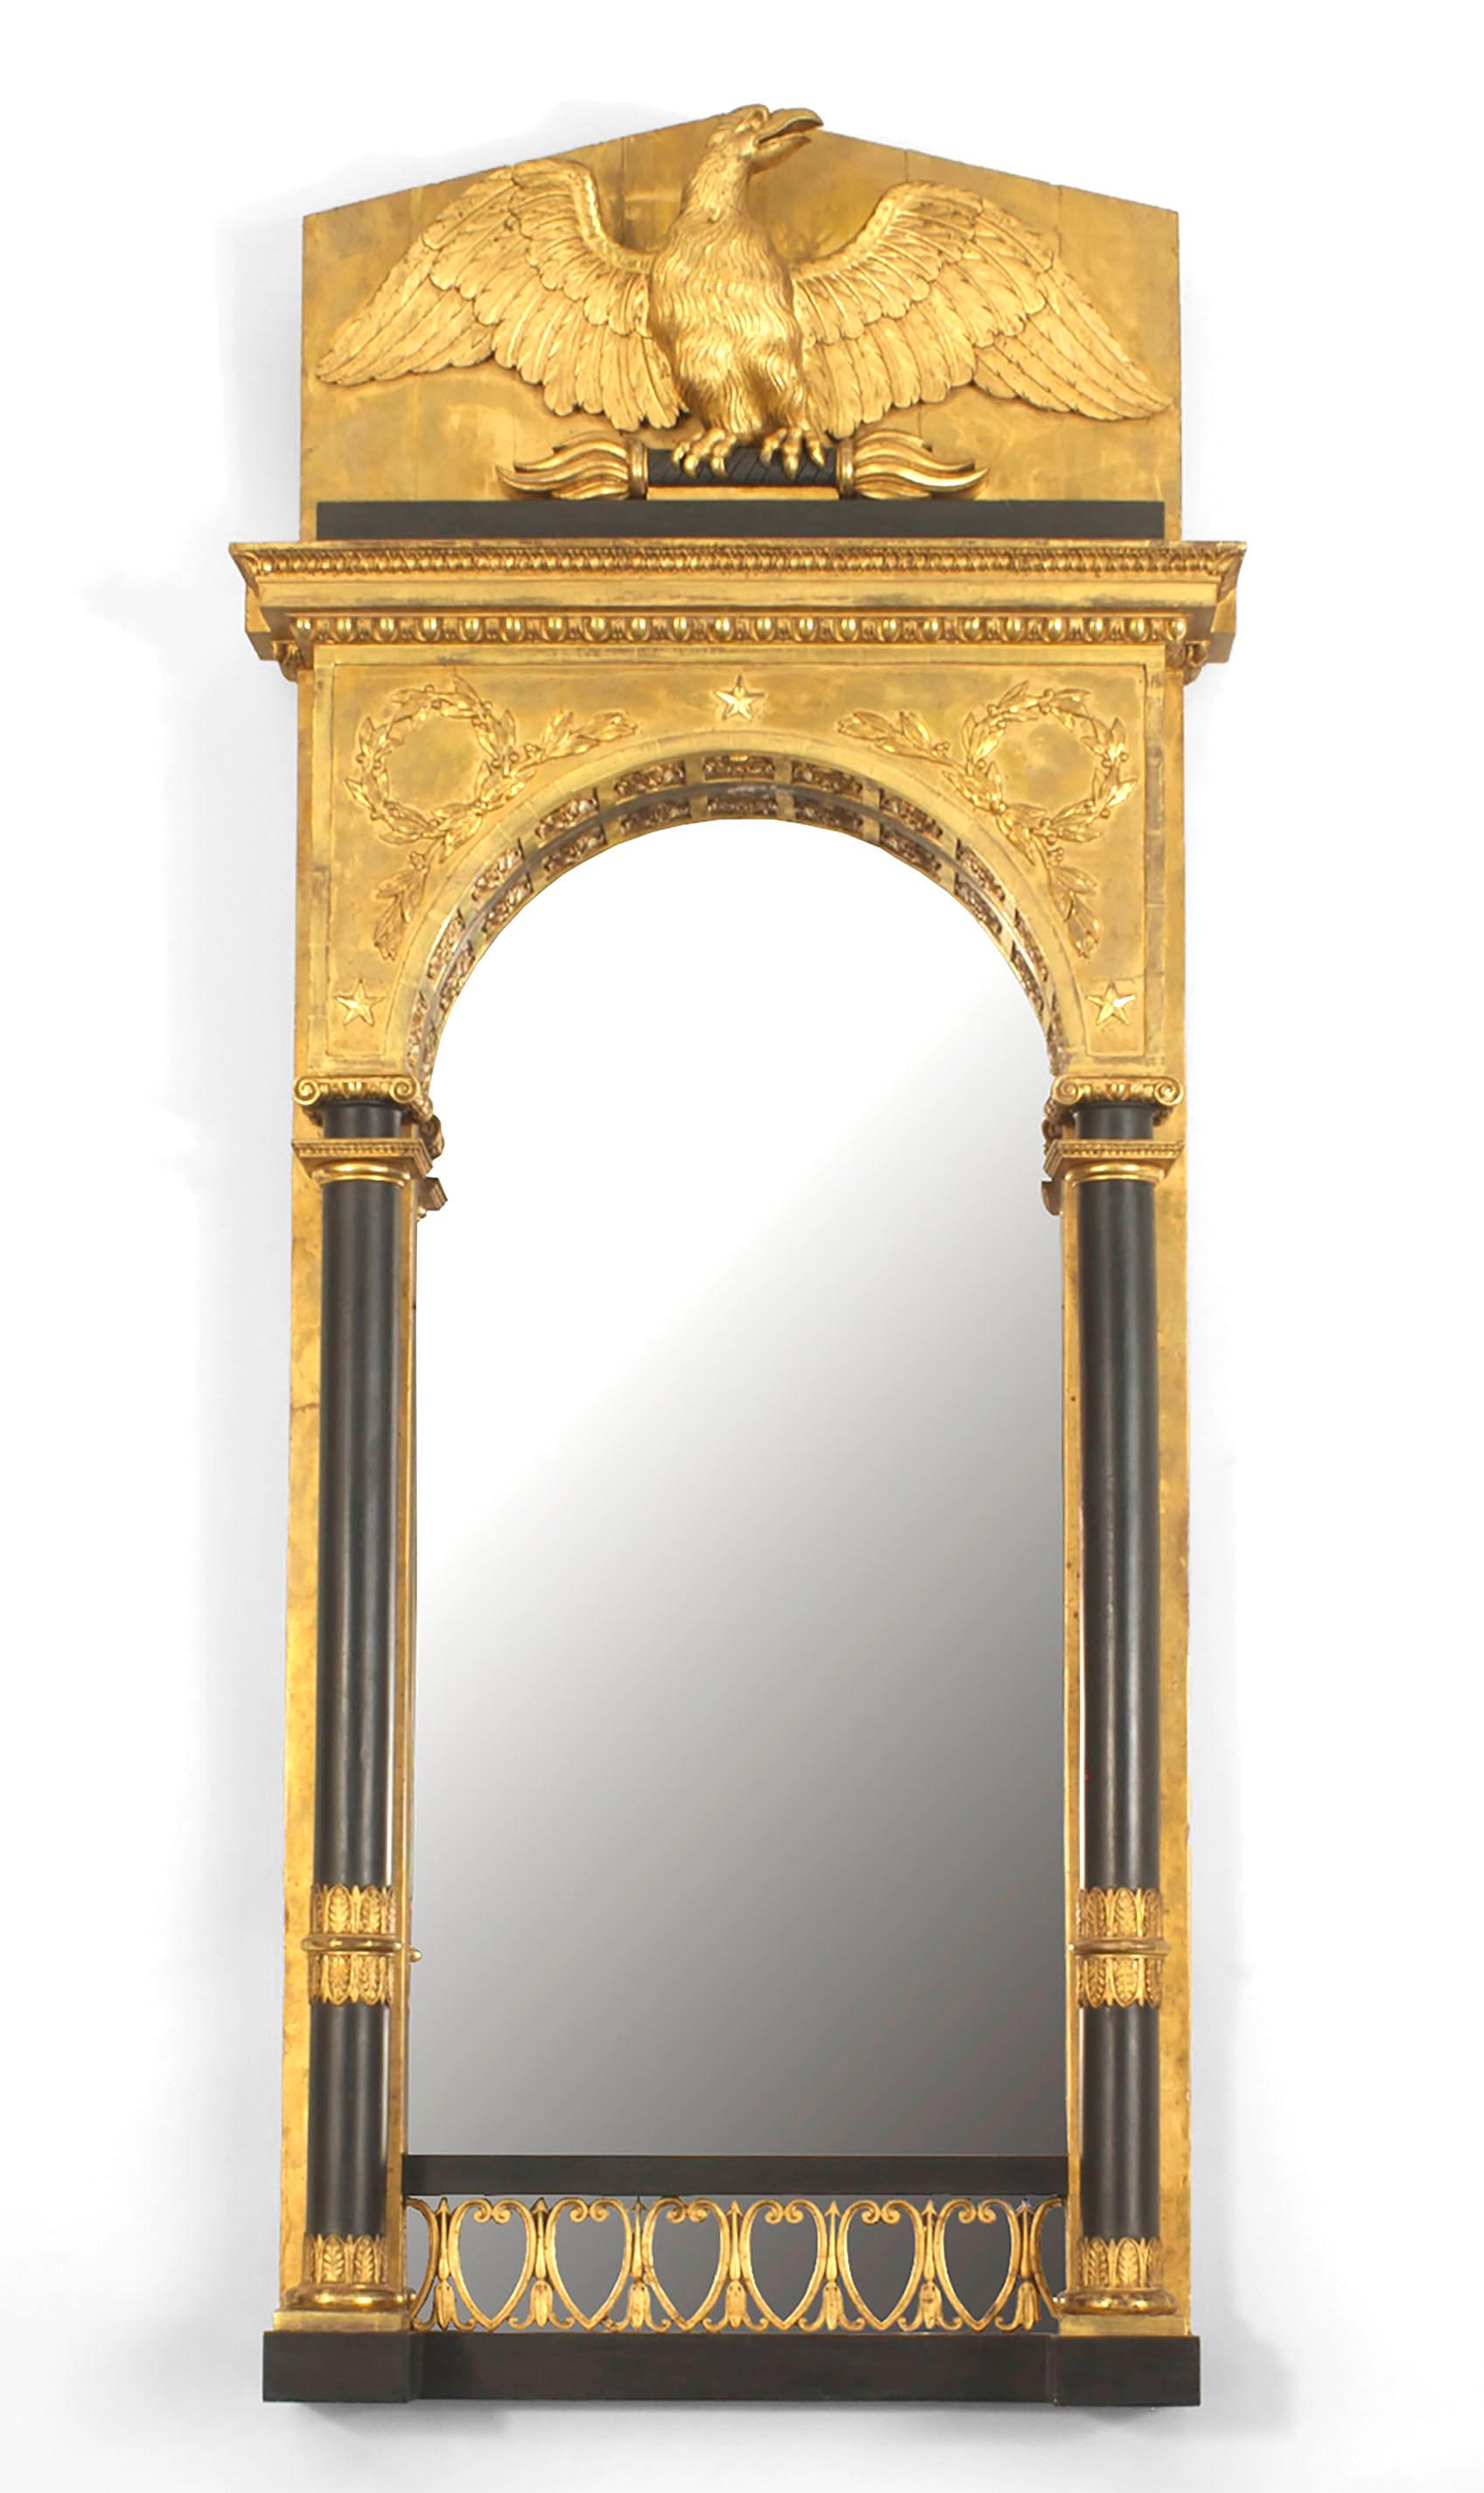 Miroir mural Empire suédois continental en bois doré avec côtés et garnitures de colonnes ébénisés et fronton d'aigle sculpté sur un miroir en forme d'arc.
 